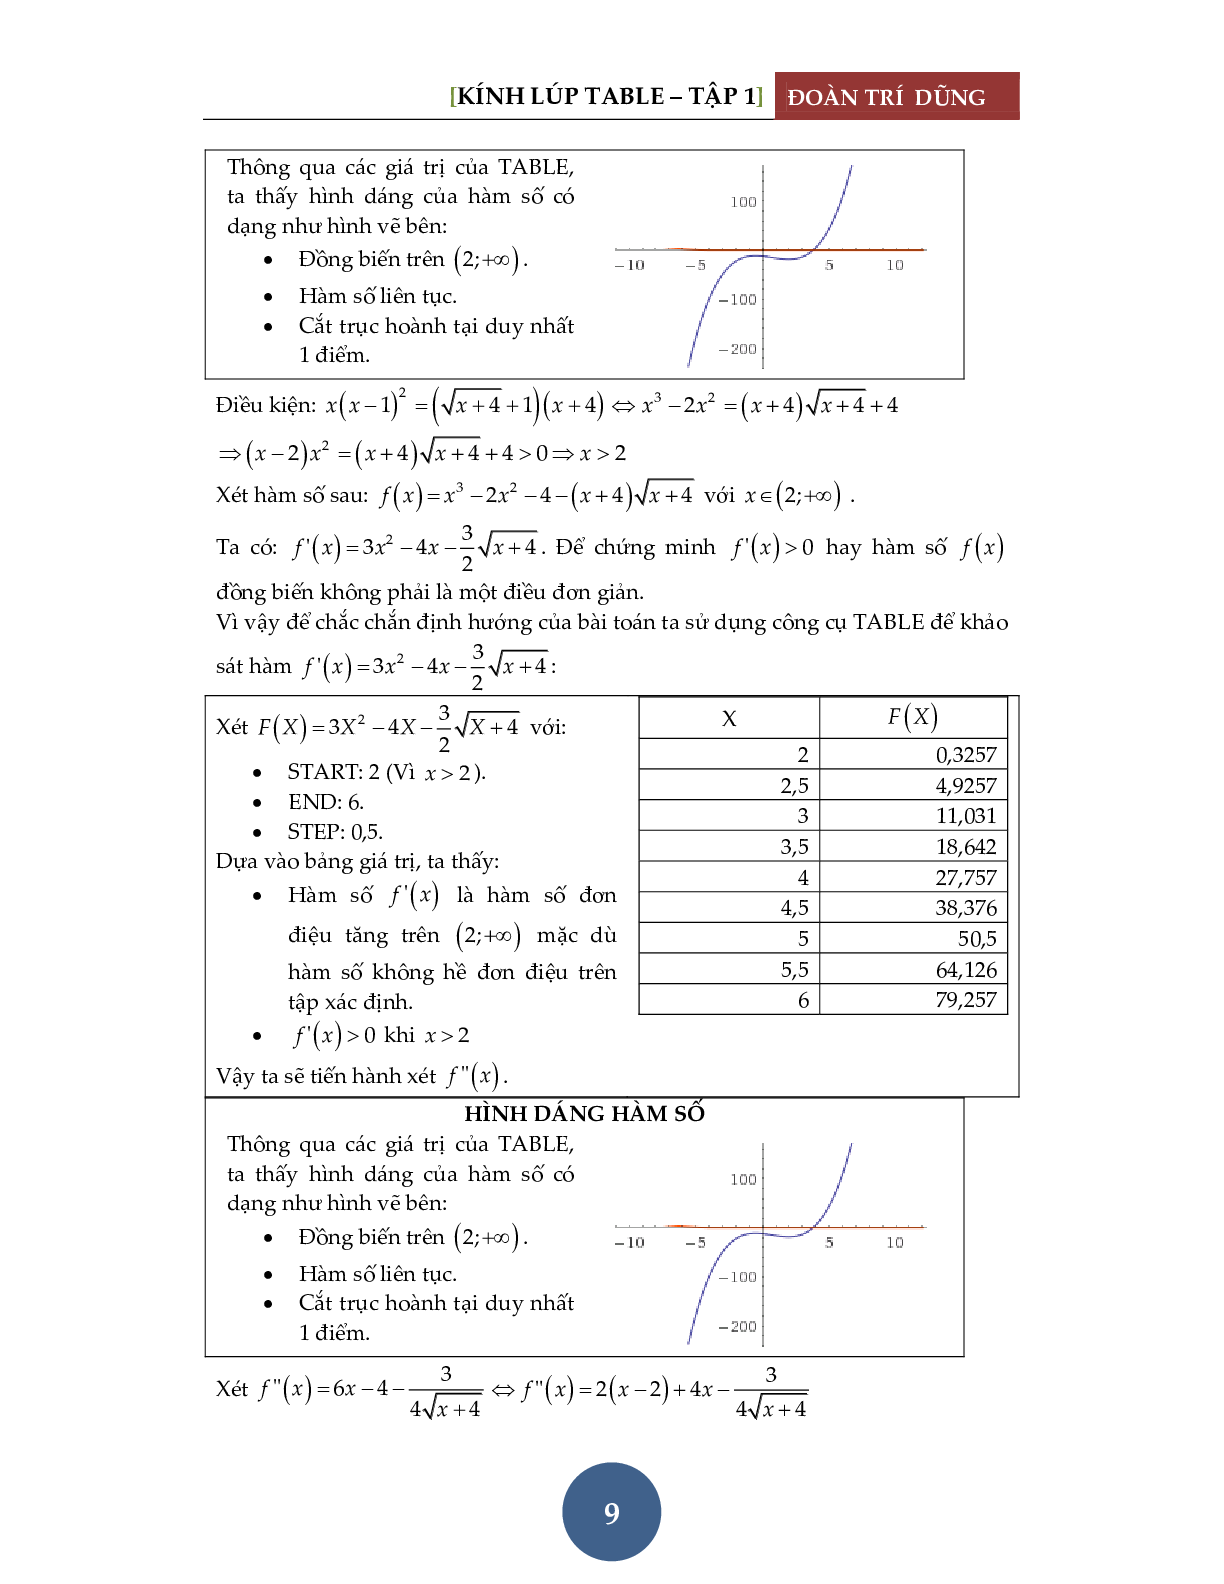 Giải phương trình bằng máy tính Casio – Tập 1: Đánh giá hàm đơn điệu (trang 10)